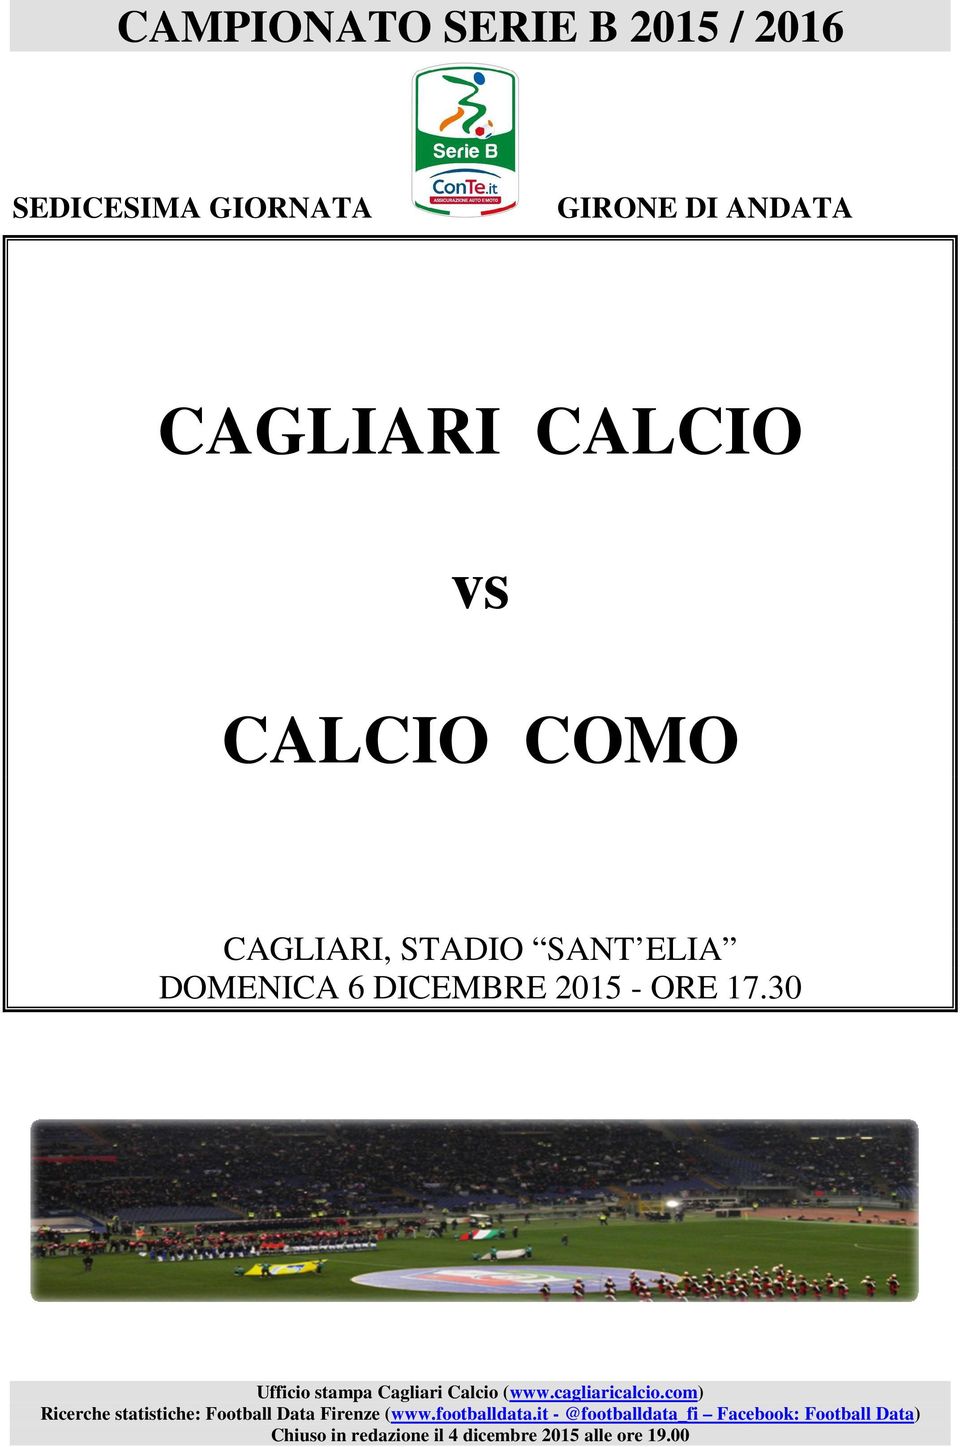 3 Ufficio stampa Cagliari Calcio (www.cagliaricalcio.